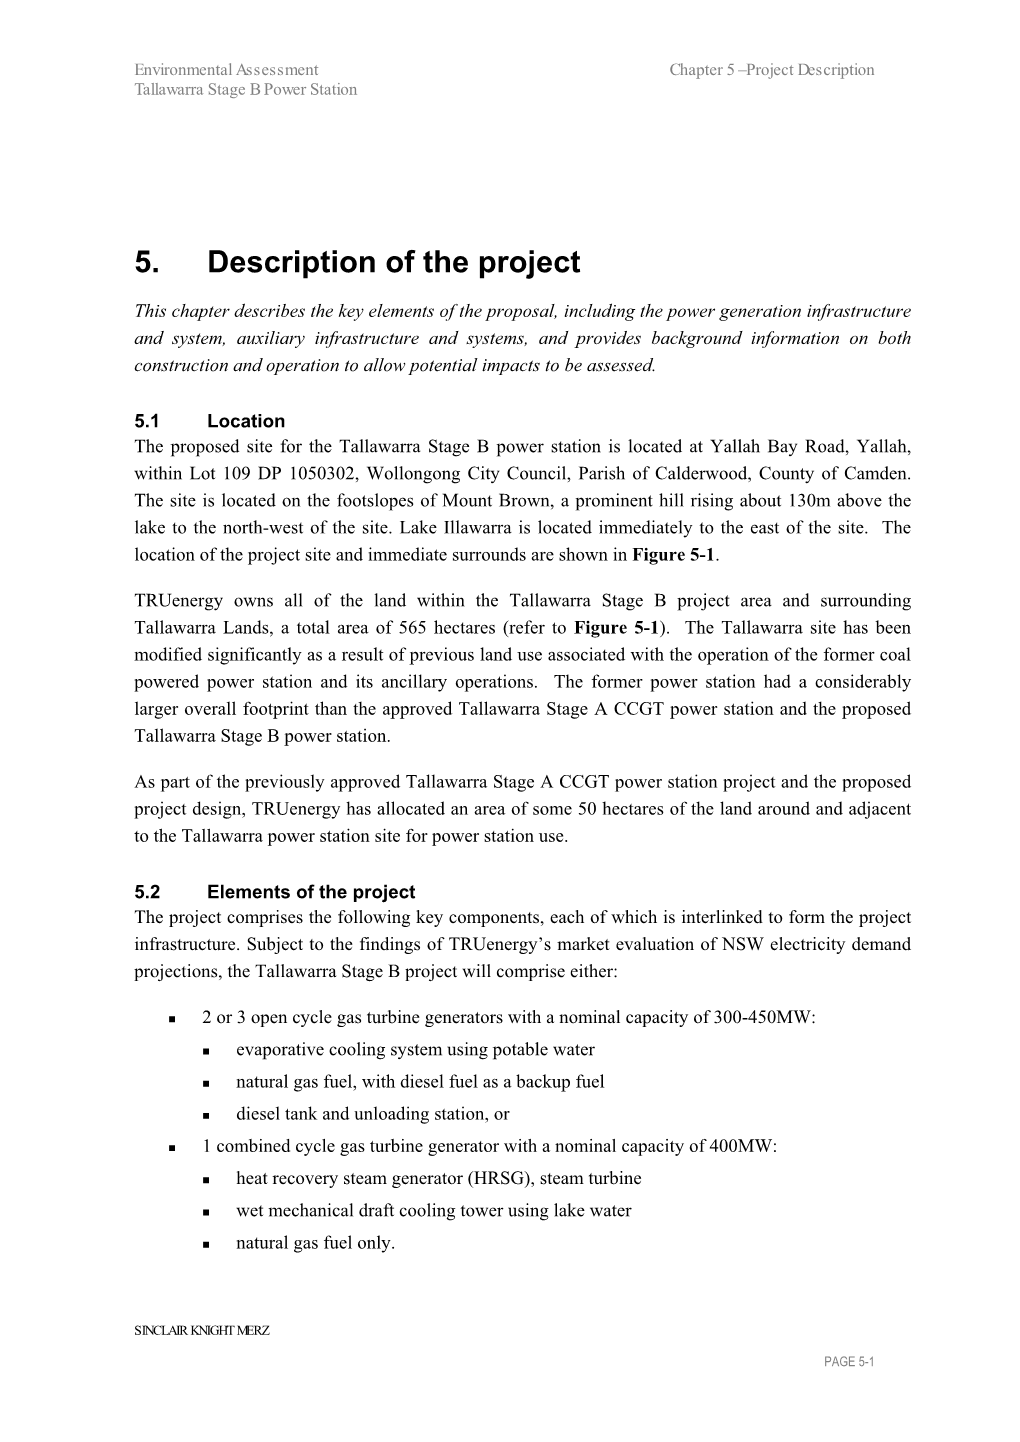 5. Description of the Project